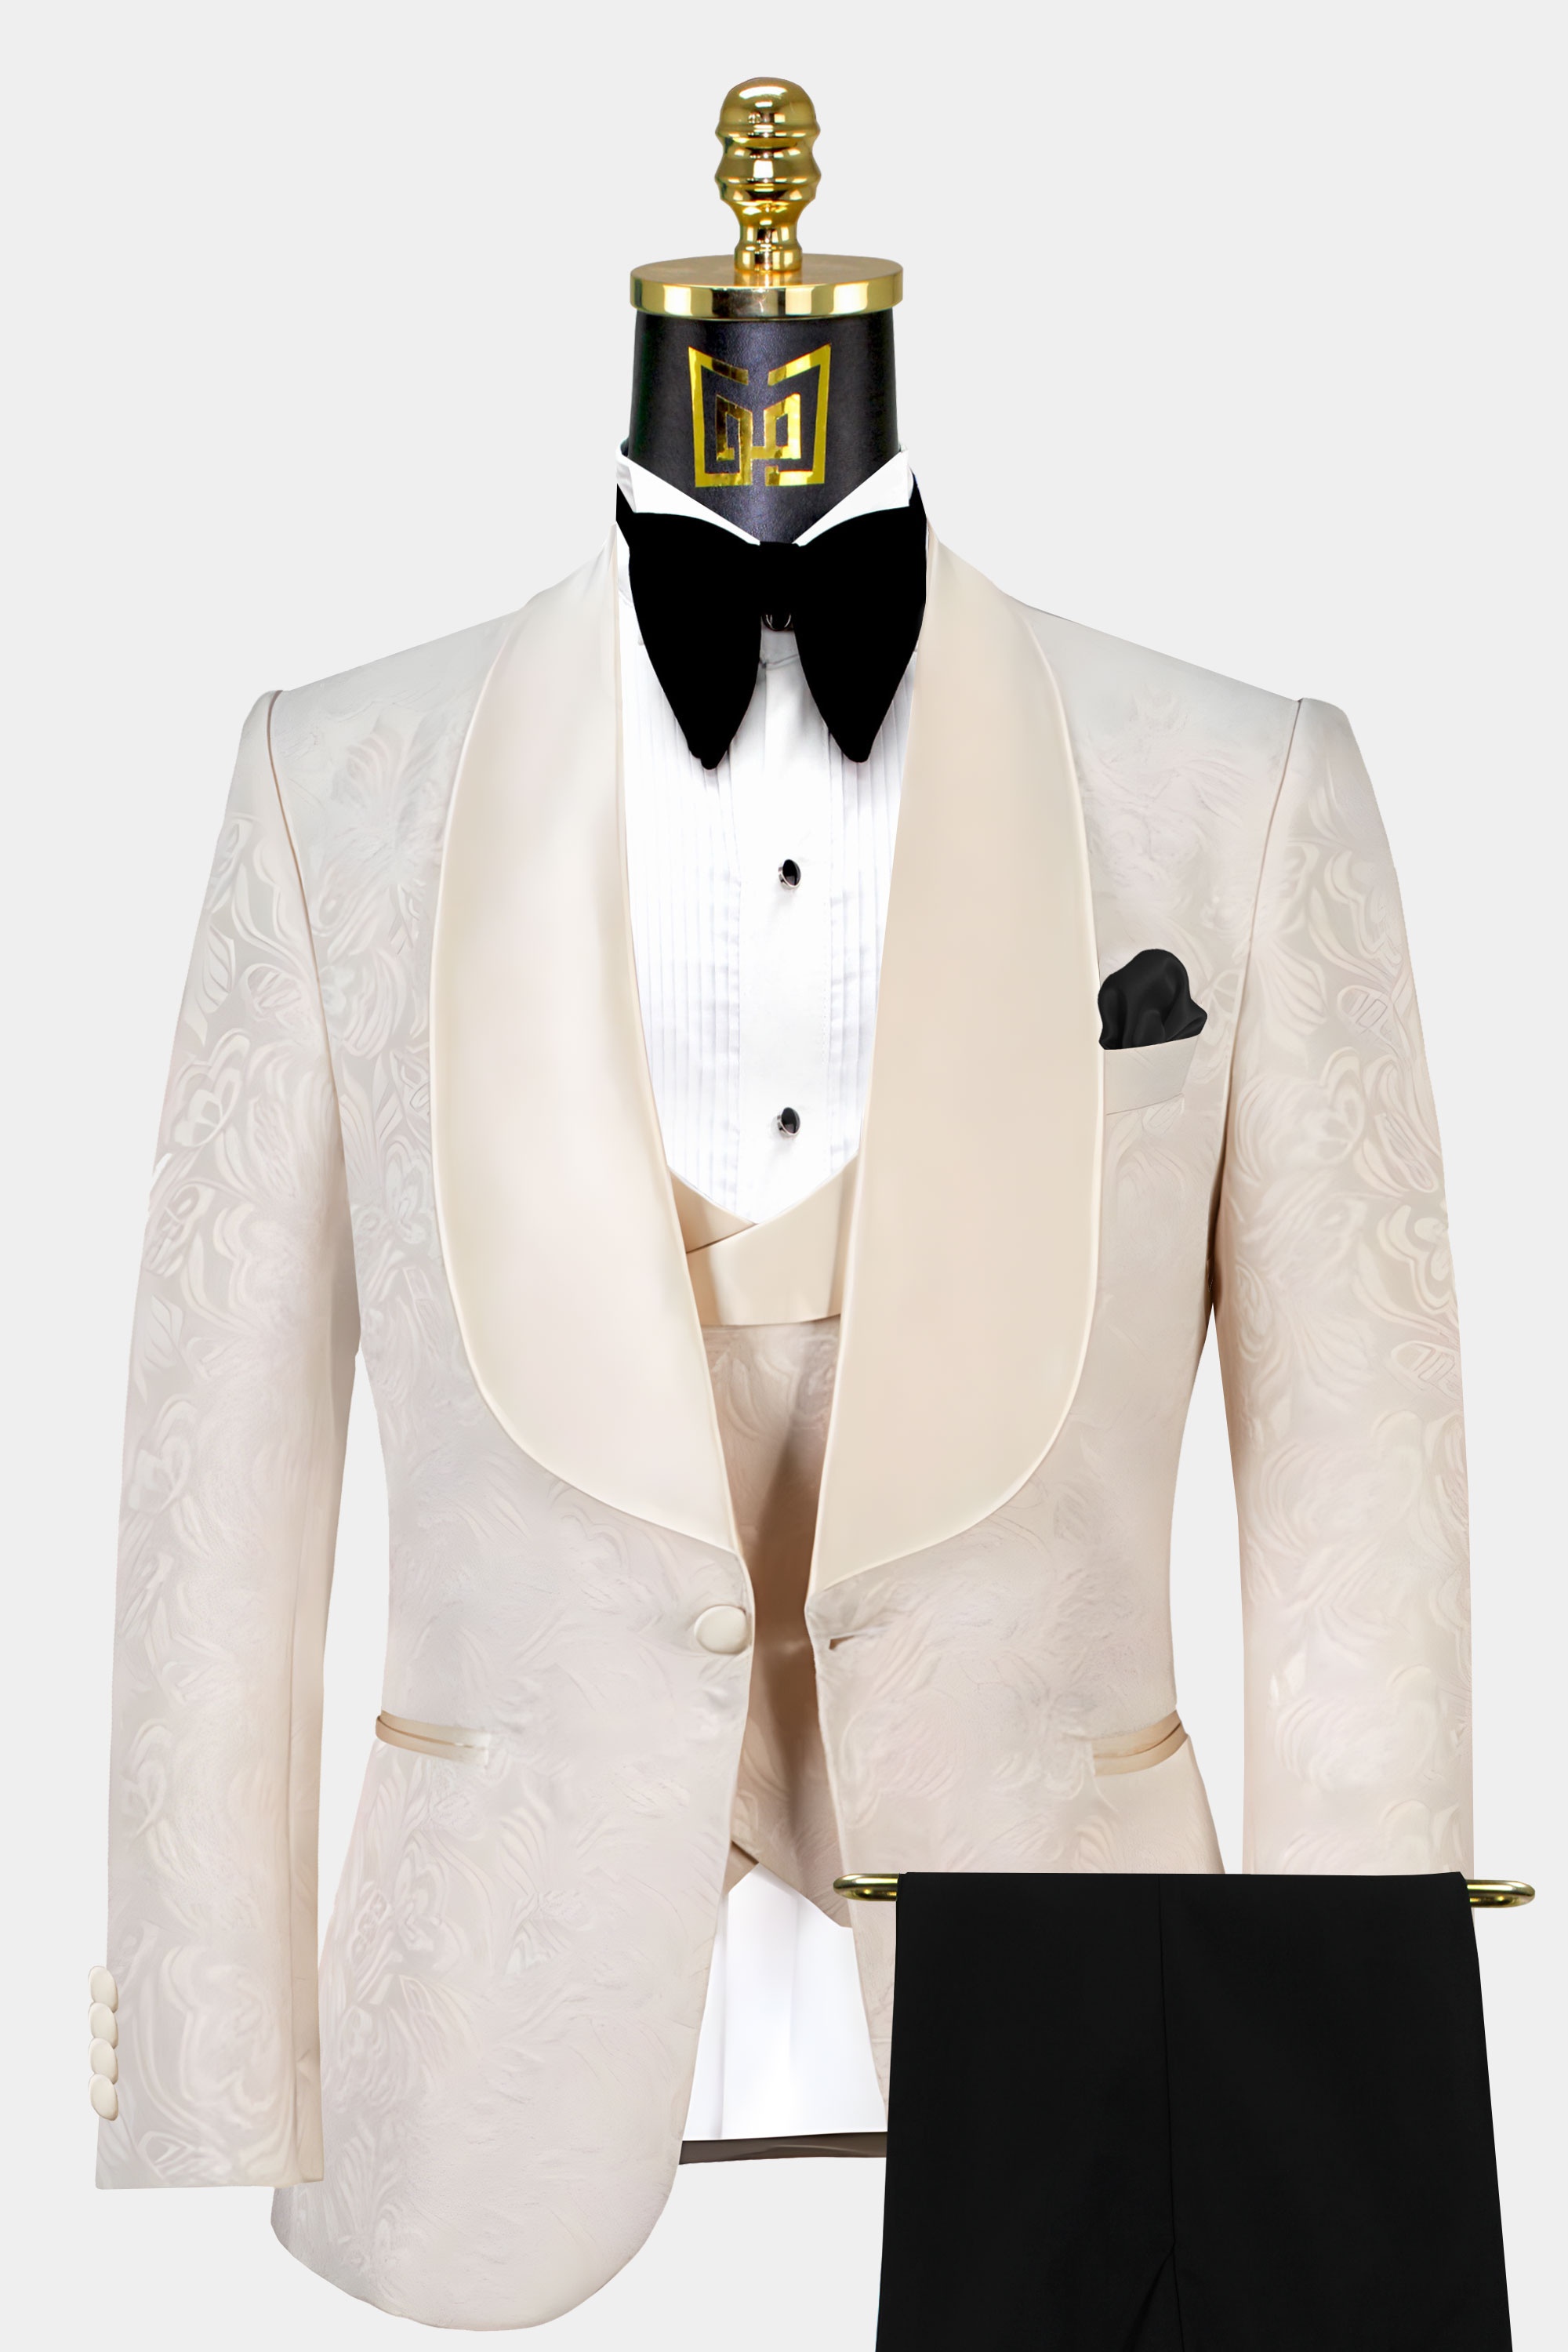 Champagne-and-Black-Tuxedo-Groom-Suit-from-Gentlemansguru.com